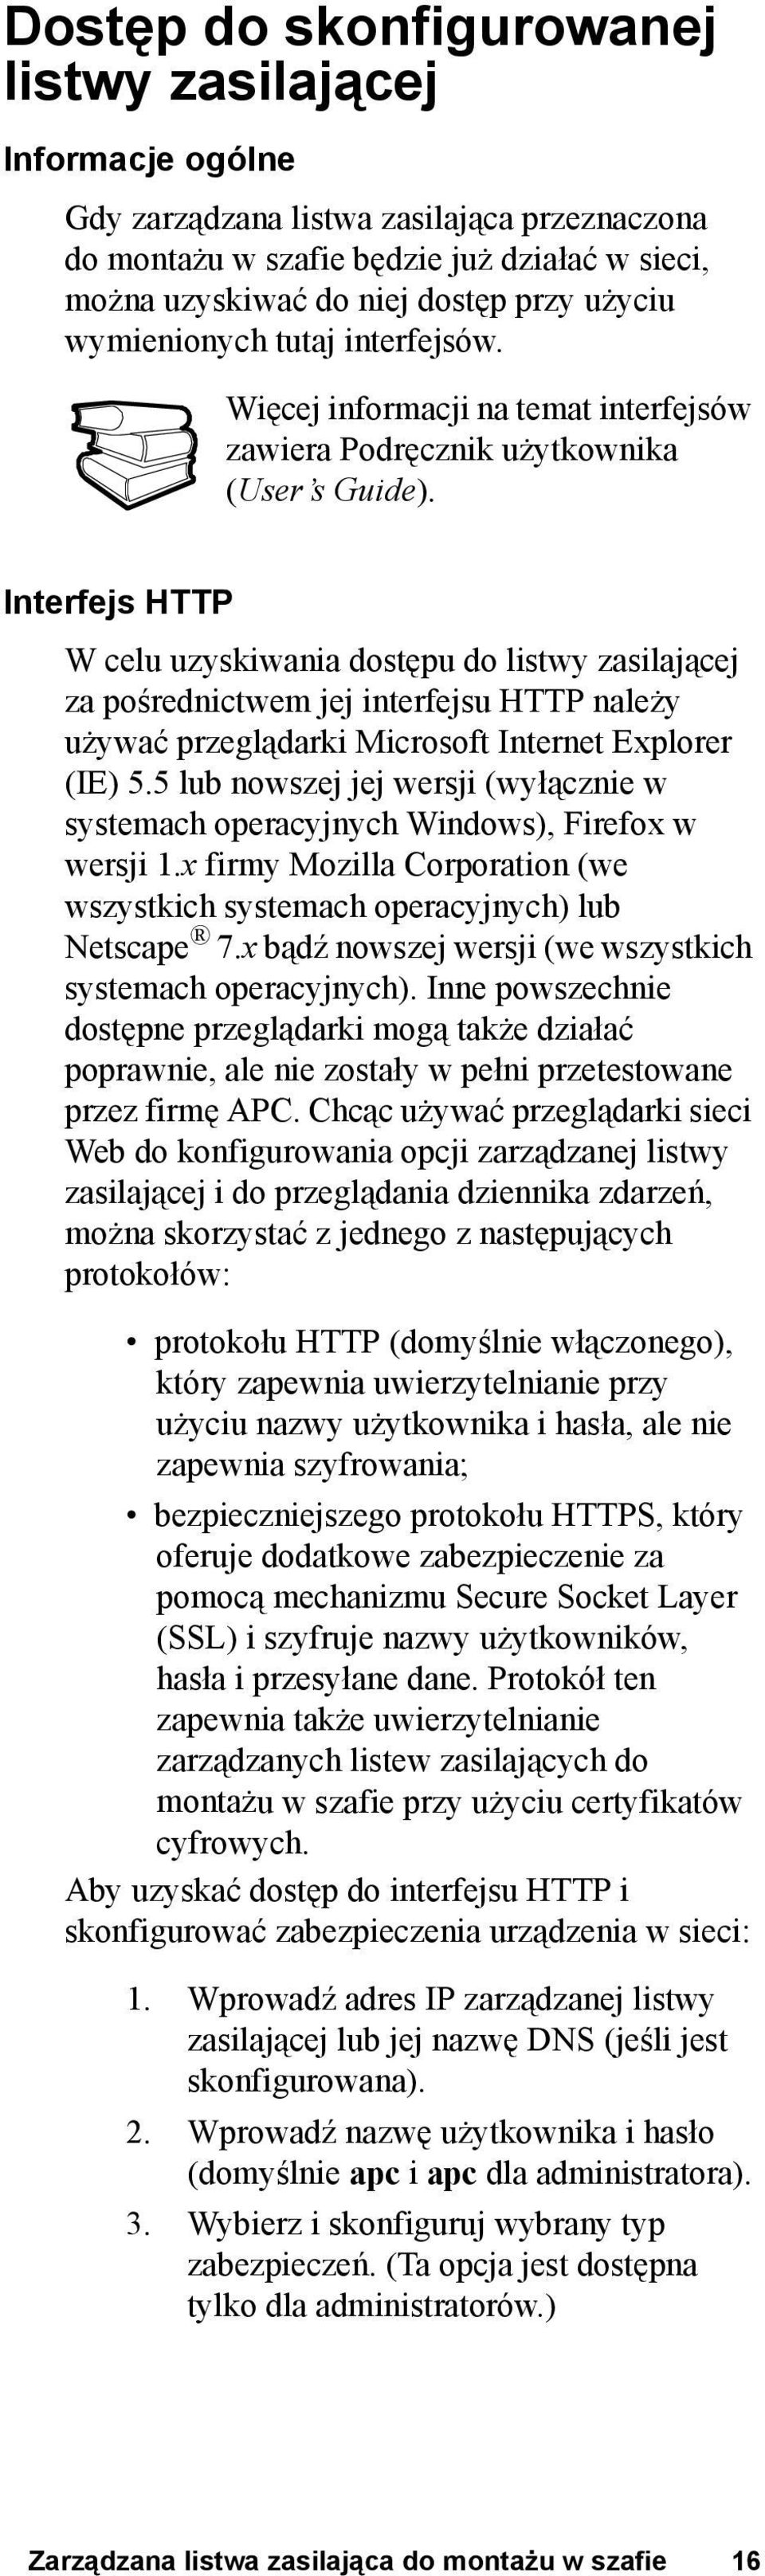 Interfejs HTTP W celu uzyskiwania dostępu do listwy zasilającej za pośrednictwem jej interfejsu HTTP należy używać przeglądarki Microsoft Internet Explorer (IE) 5.